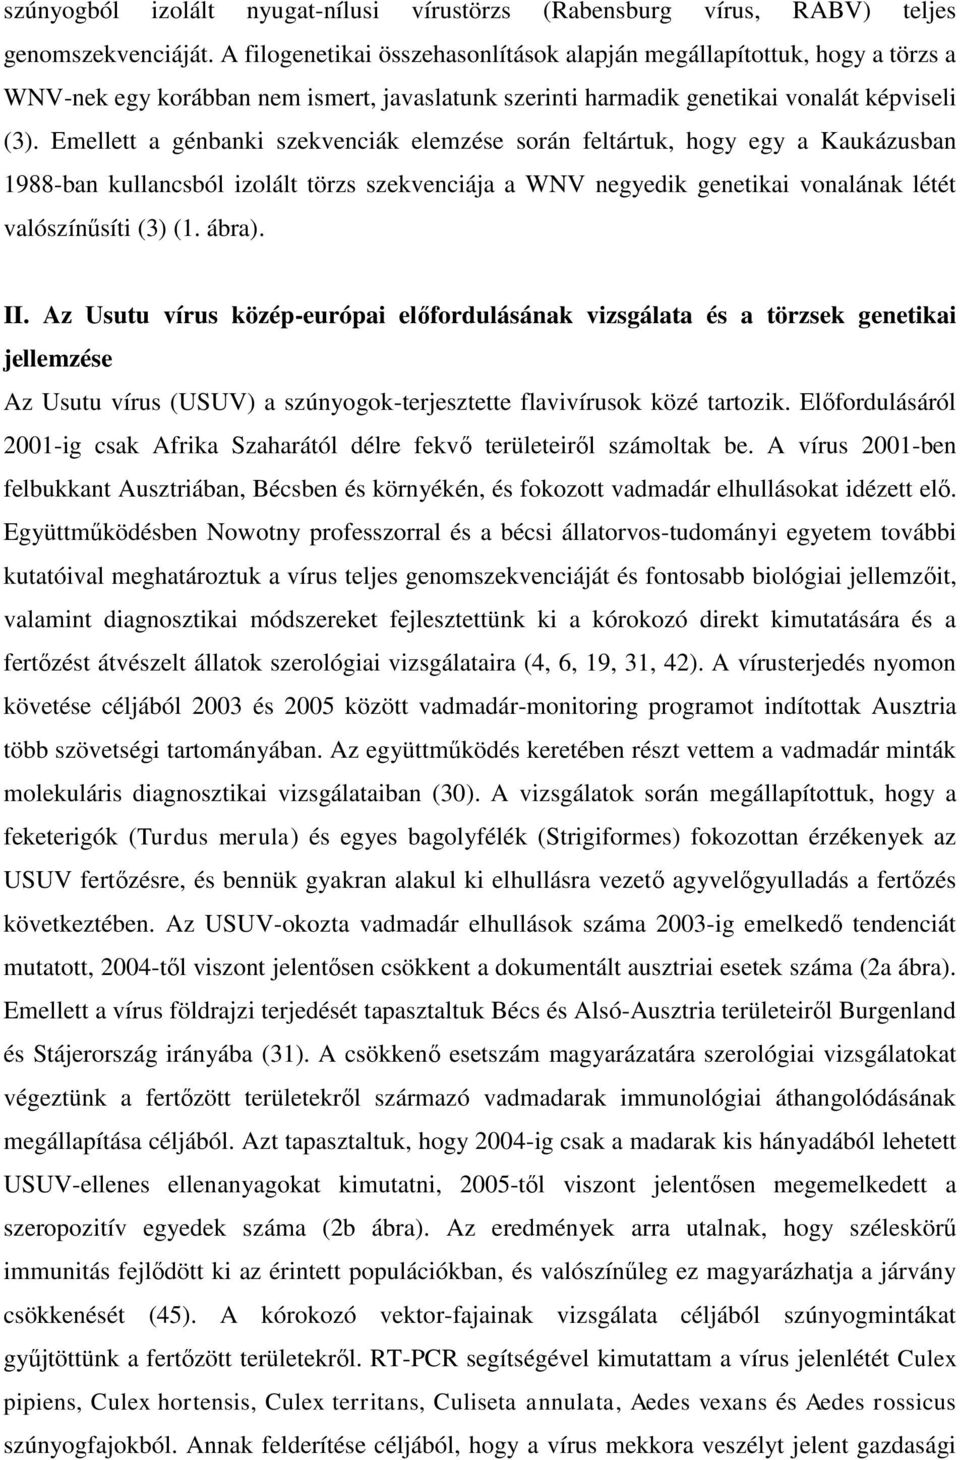 Emellett a génbanki szekvenciák elemzése során feltártuk, hogy egy a Kaukázusban 1988-ban kullancsból izolált törzs szekvenciája a WNV negyedik genetikai vonalának létét valószínűsíti (3) (1. ábra).